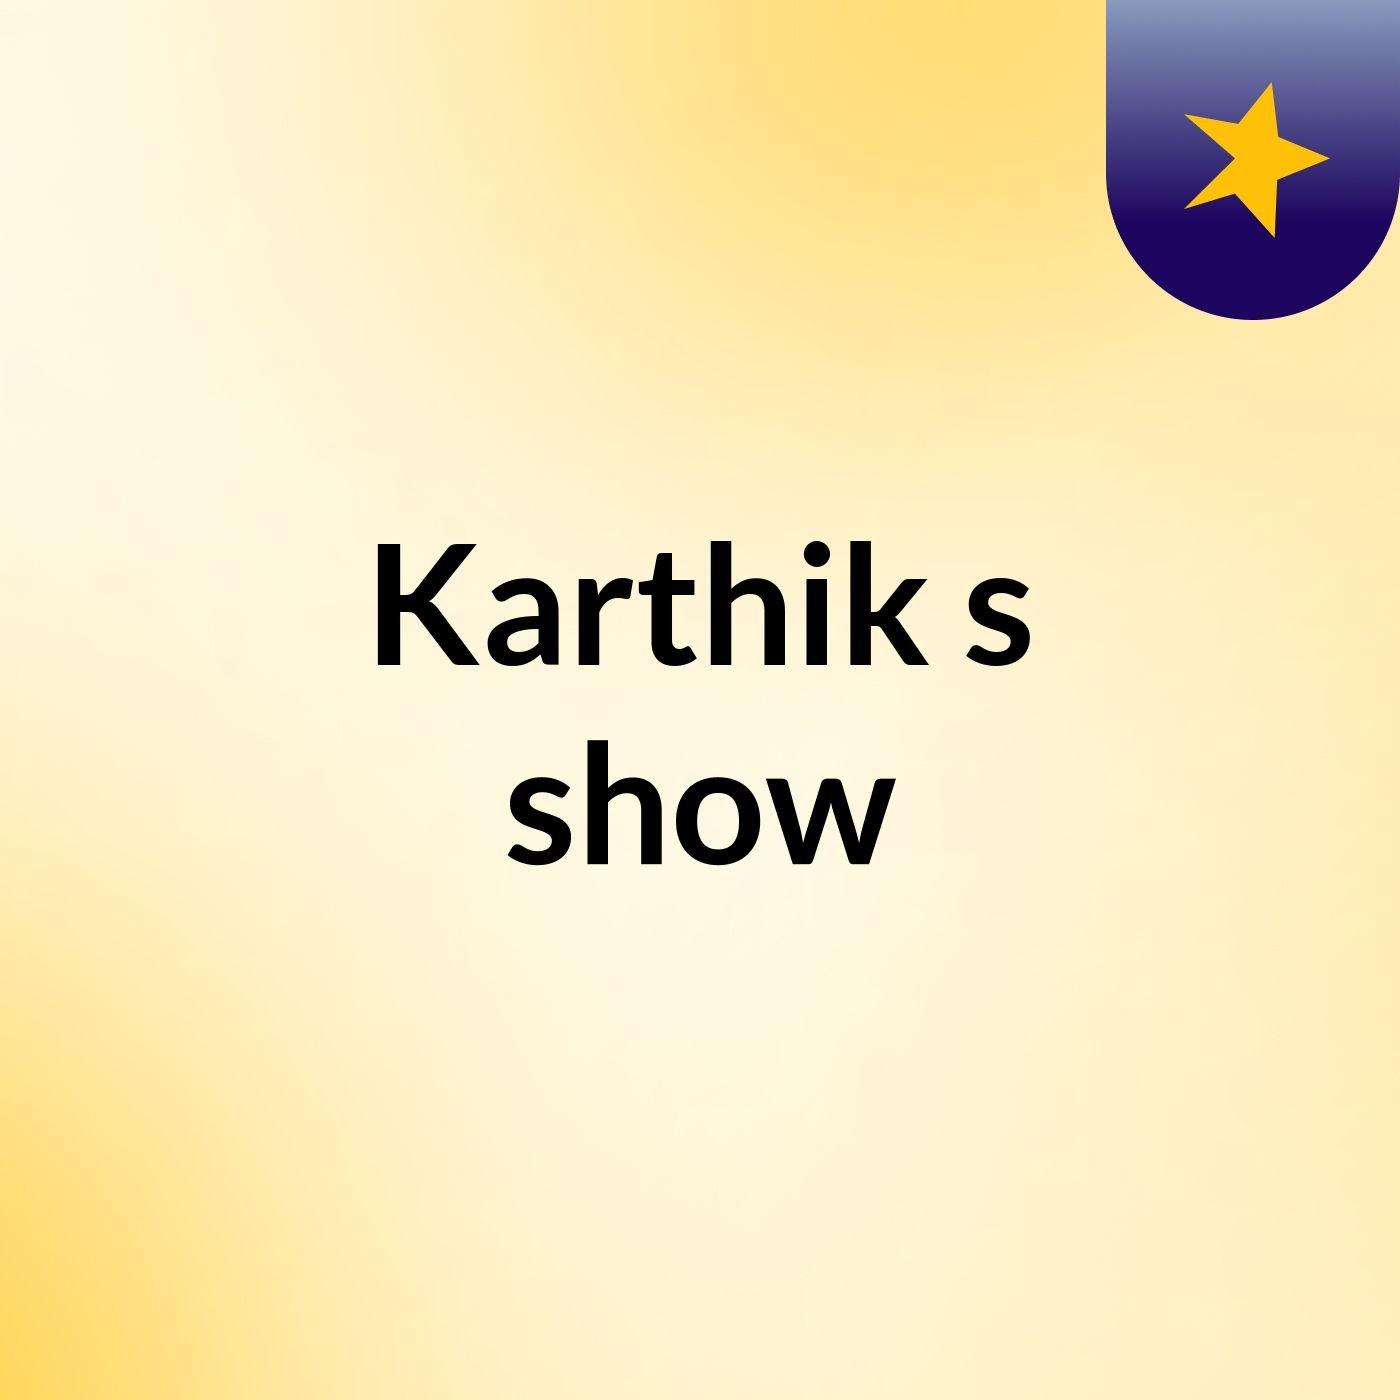 Karthik's show